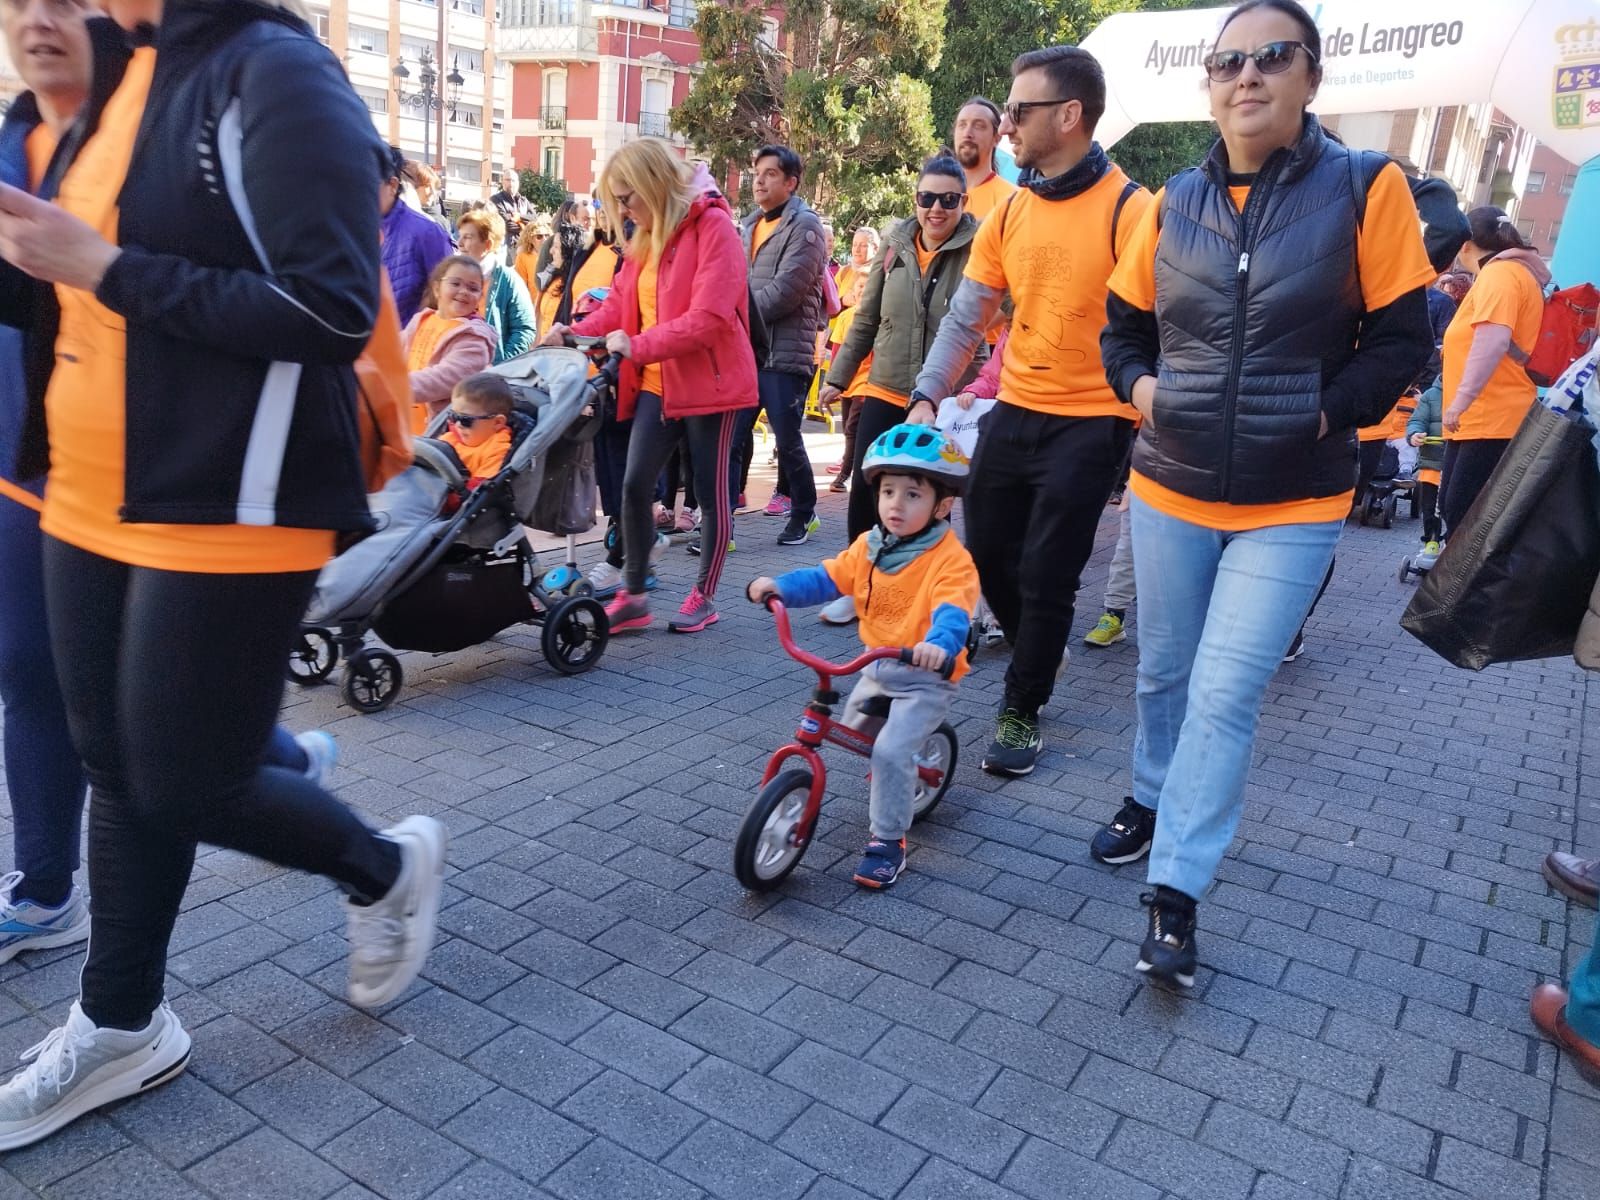 Más de 600 personas corren en Langreo contra el cáncer infantil